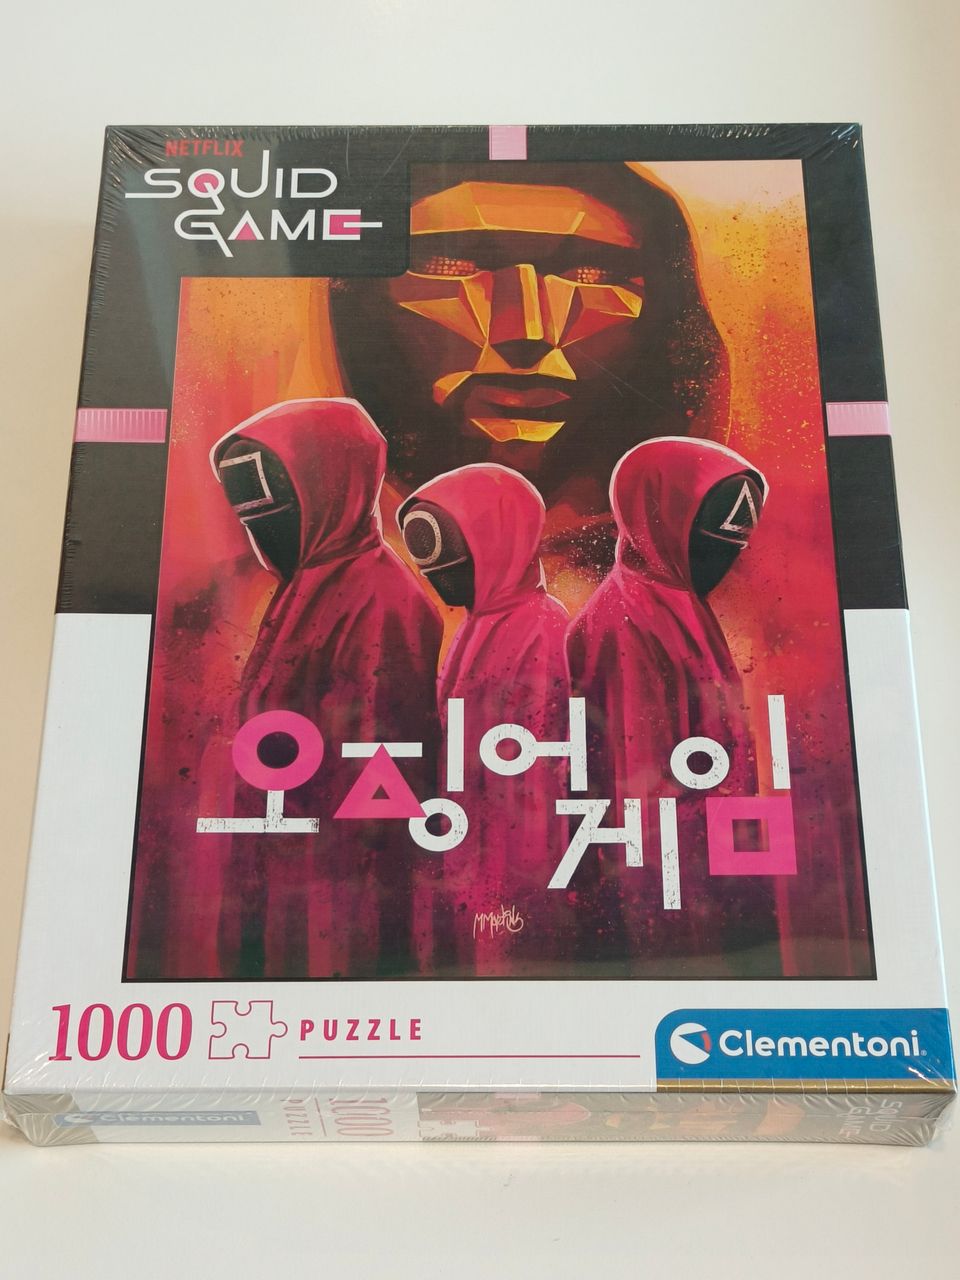 UUSI Clementonin Squid Game 1000 palan palapeli